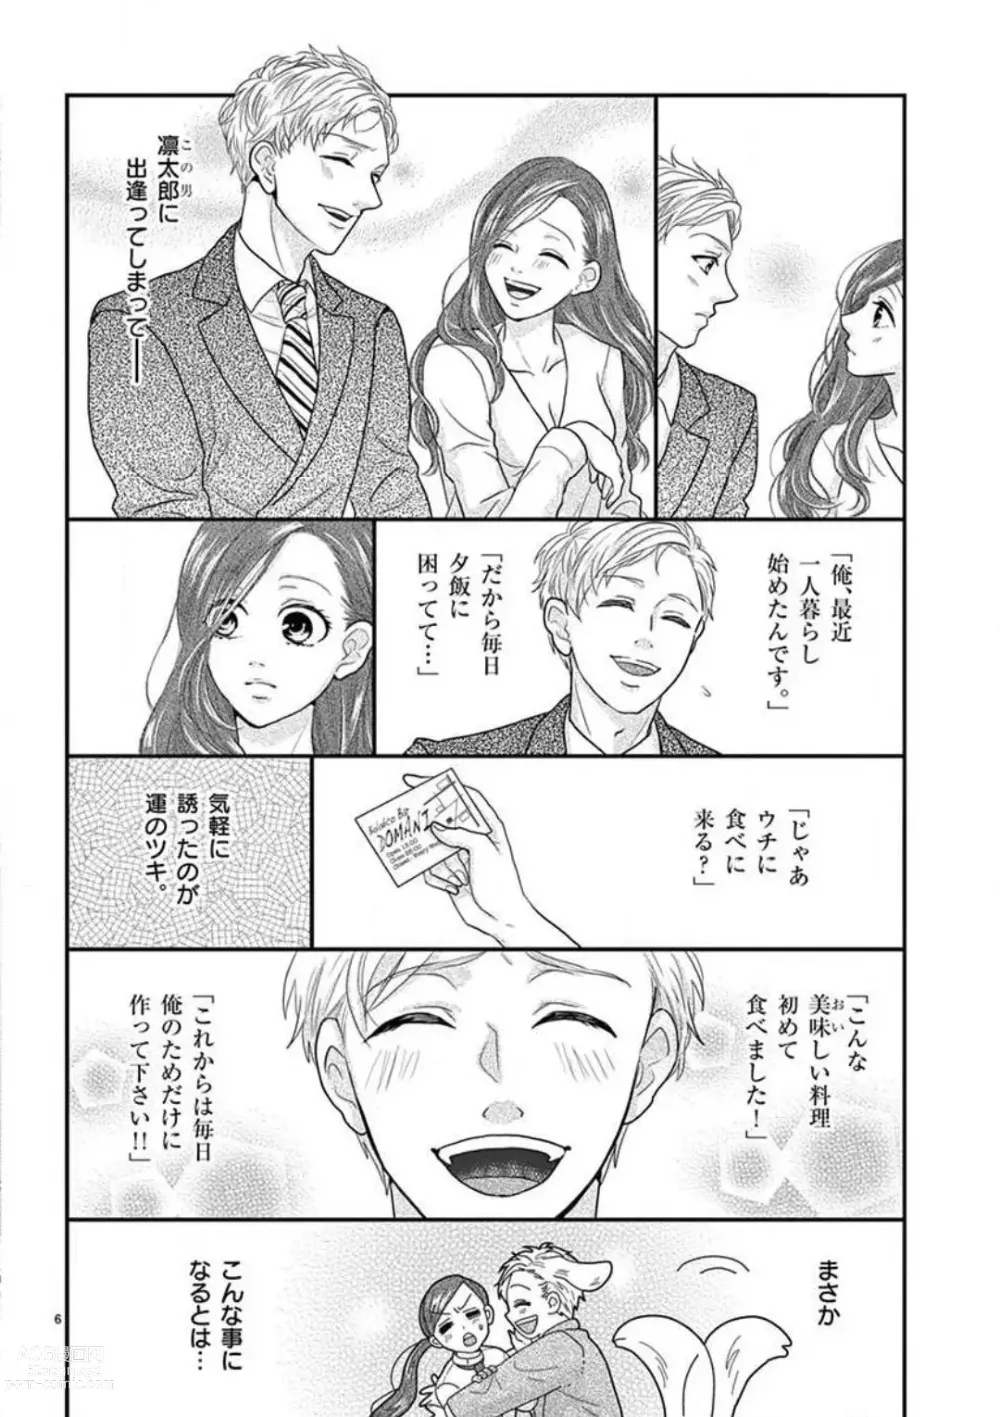 Page 6 of manga Yajū Suitchi ON!〜 Junjō Wanko wa Hageshi Sugi 〜